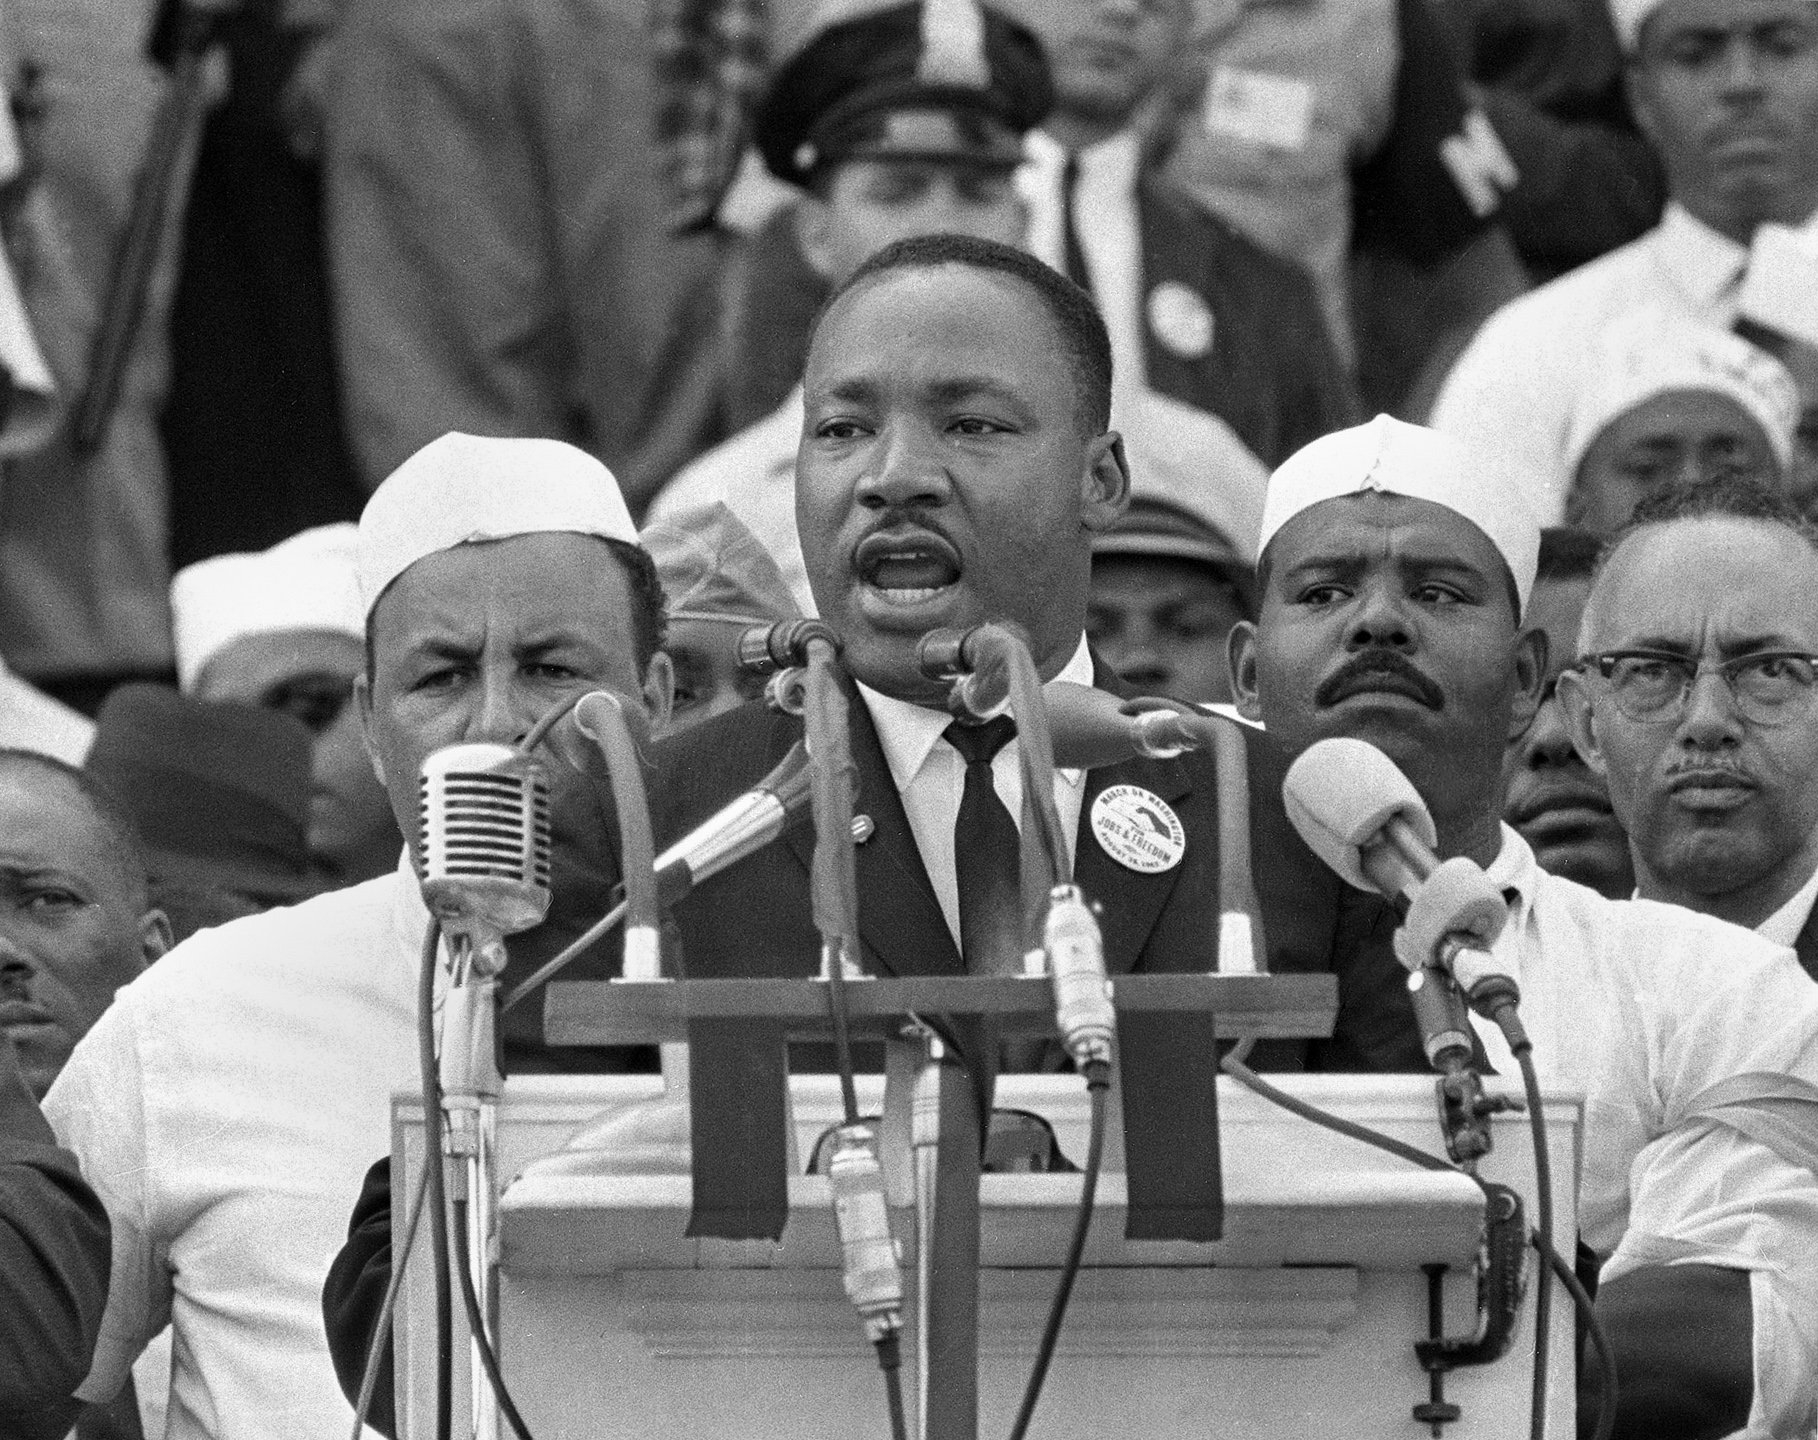 Que l’on soit célèbre ou pas, le contexte importe beaucoup dans la réussite d'un discours, écrit Matthieu Wildhaber. Sur cette image, Martin Luther King prononçant son célèbre discours «I have a dream».